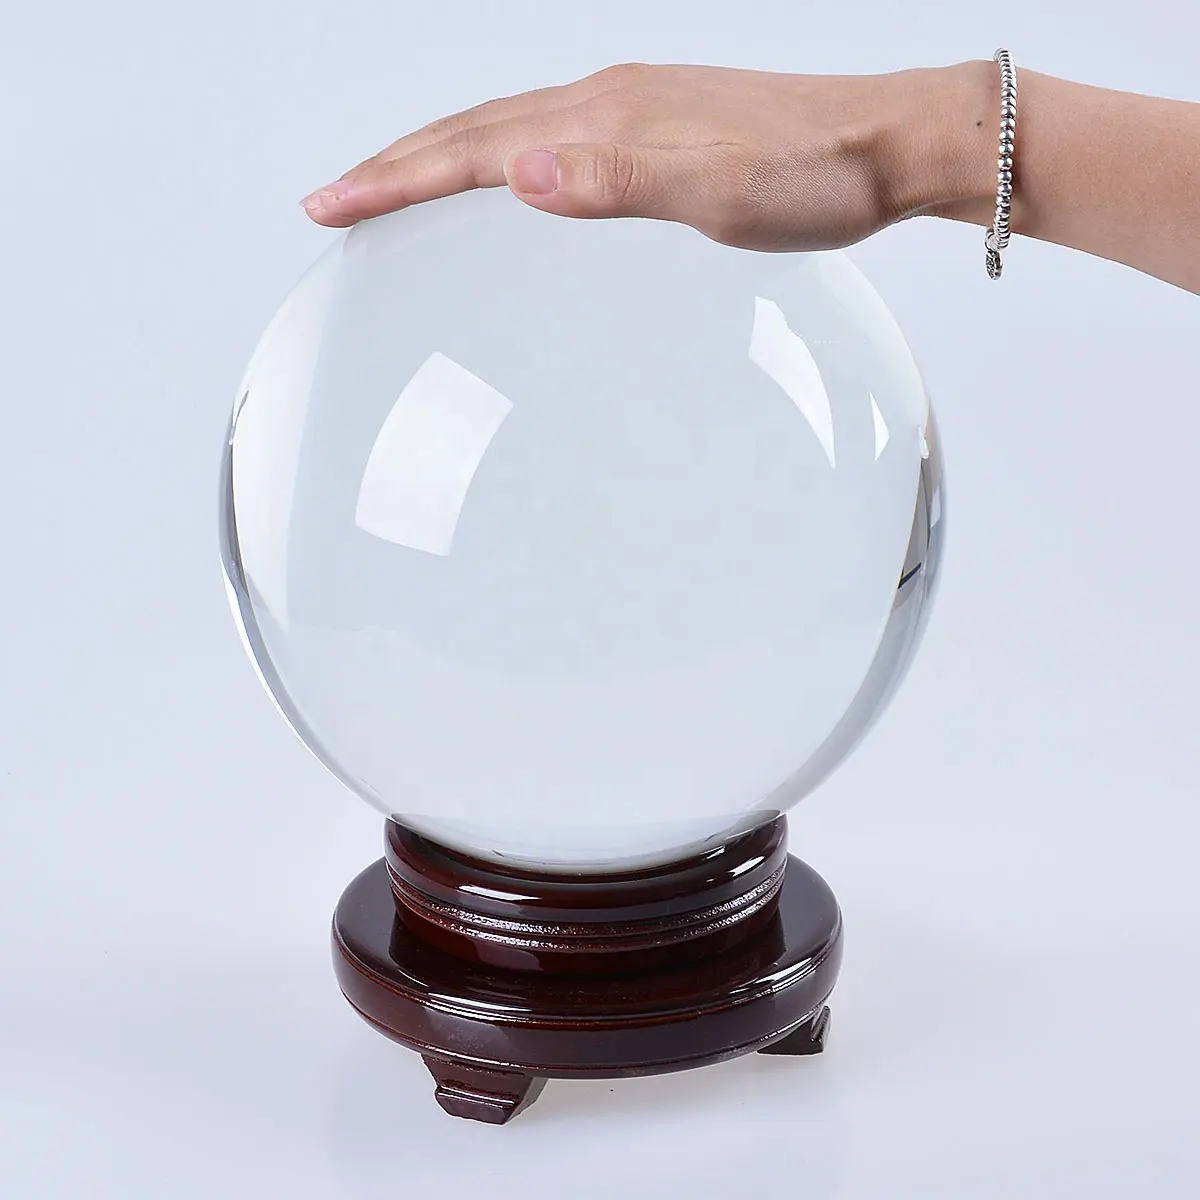 Gran claro adivinación bola de cristal 200mm (8 pulgadas) de esfera de vidrio soporte de madera gratis decoración del hogar adornos